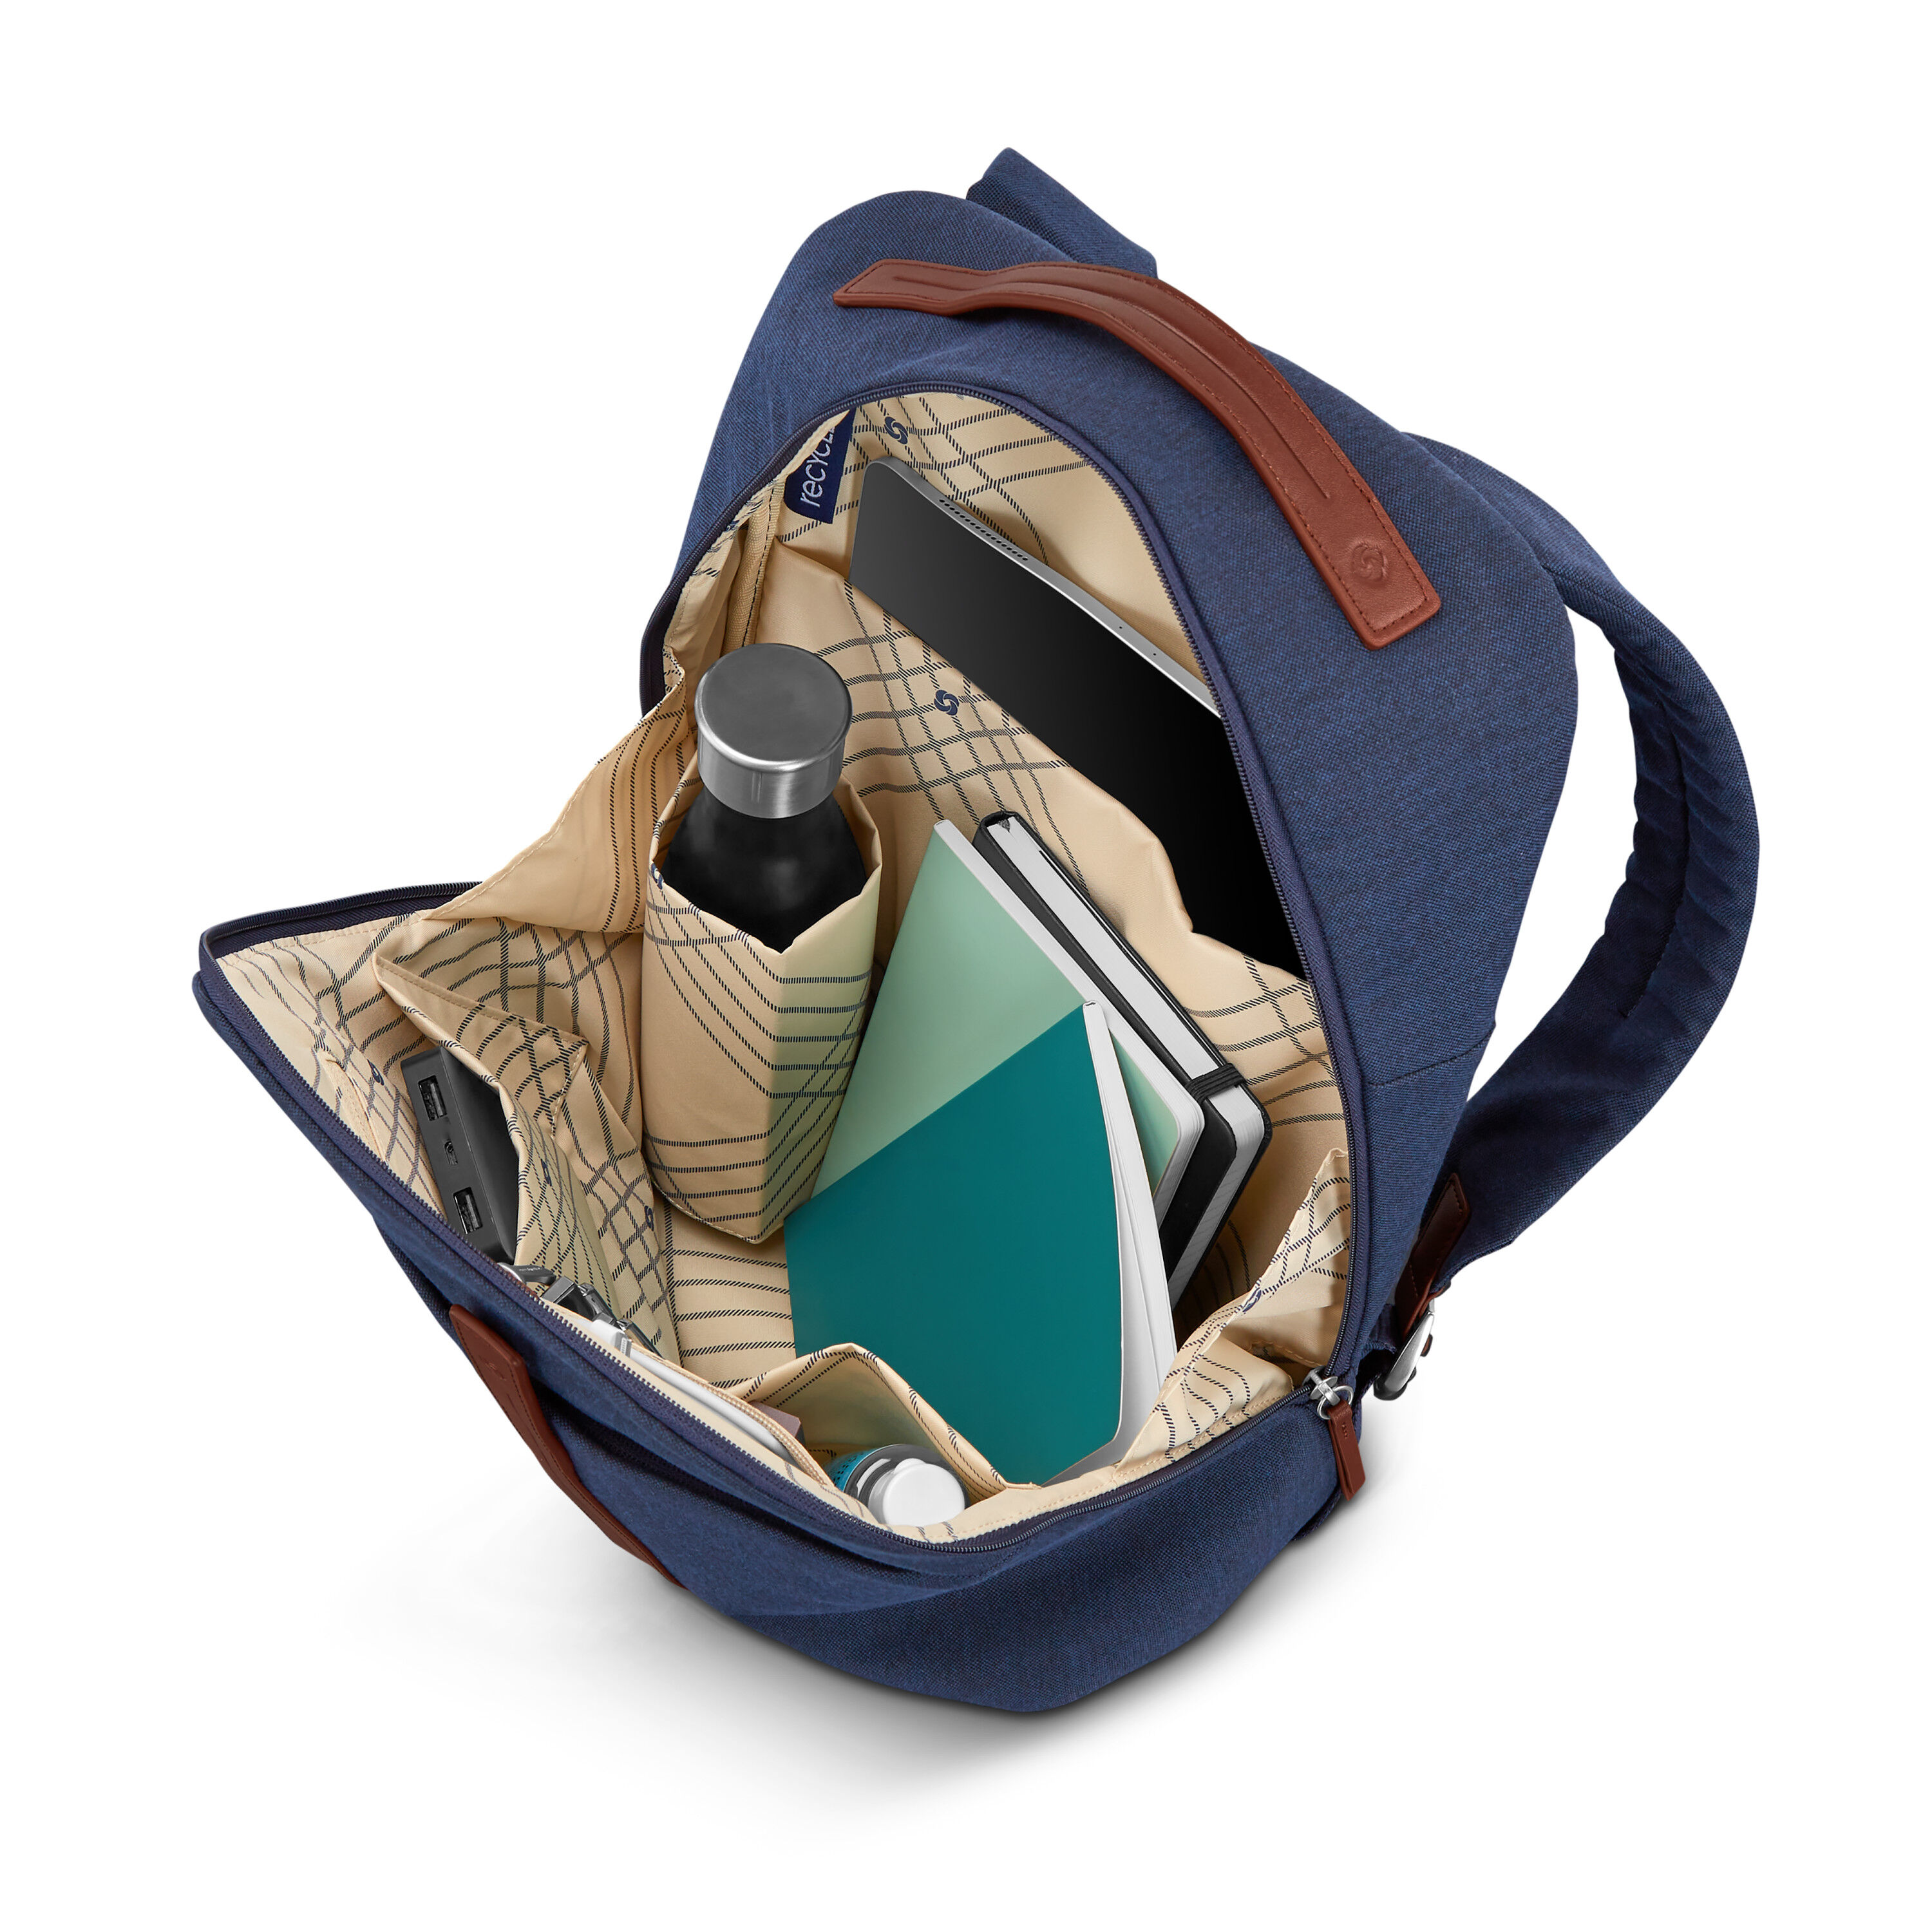 Buy Virtuosa Backpack for USD 89.99 | Samsonite US